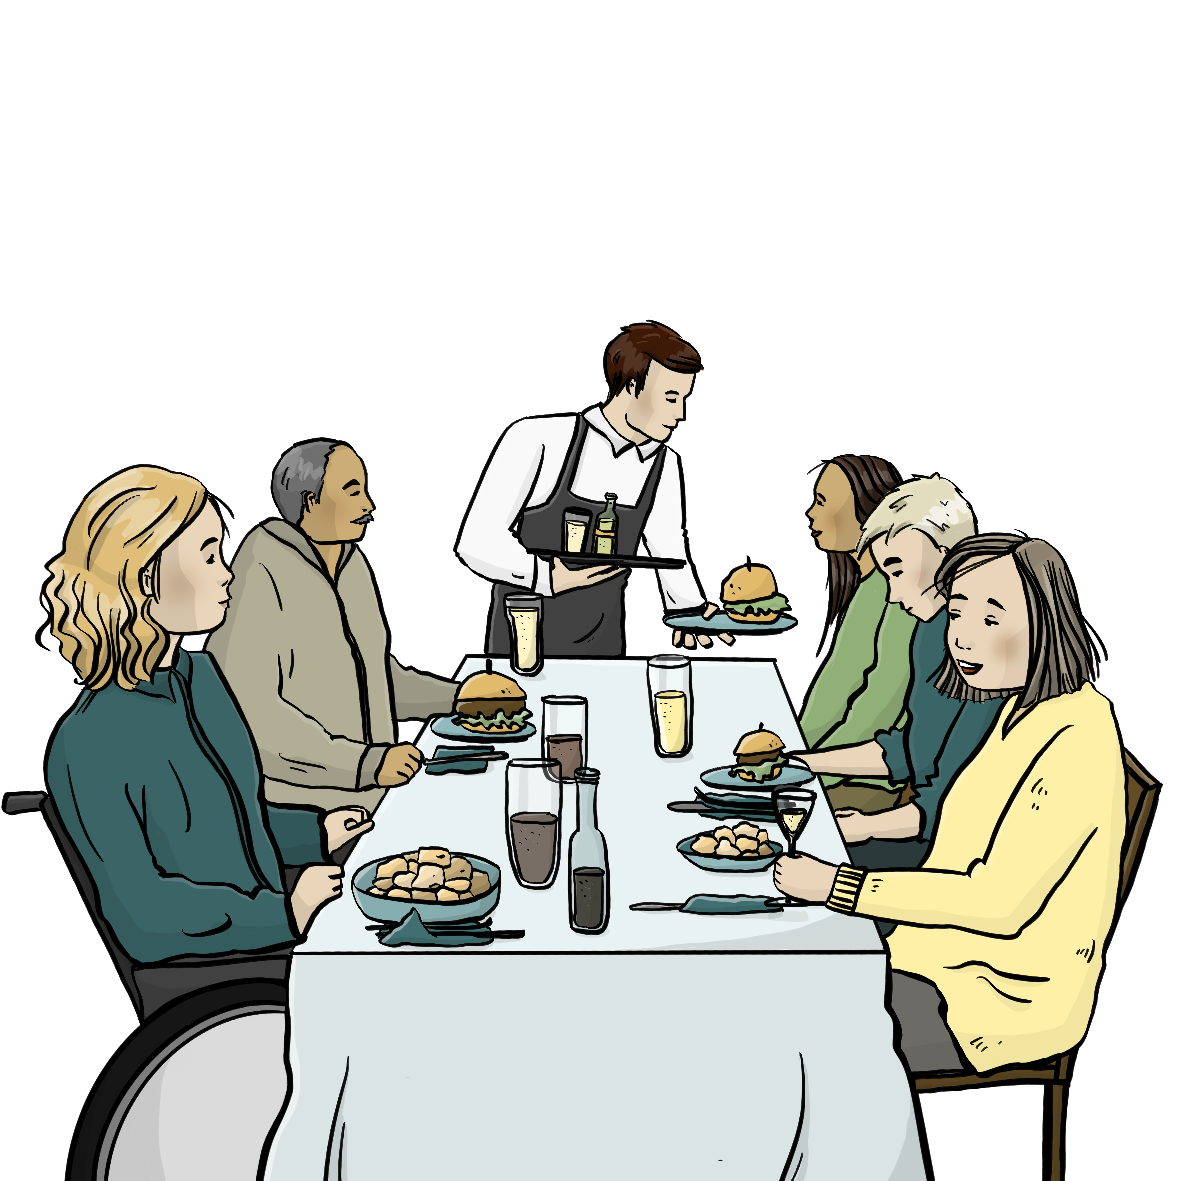 Menschen sitzen an einem Tisch, vor ihnen stehen Teller mit Essen und Getränke. Ein Kellner bringt Essen.